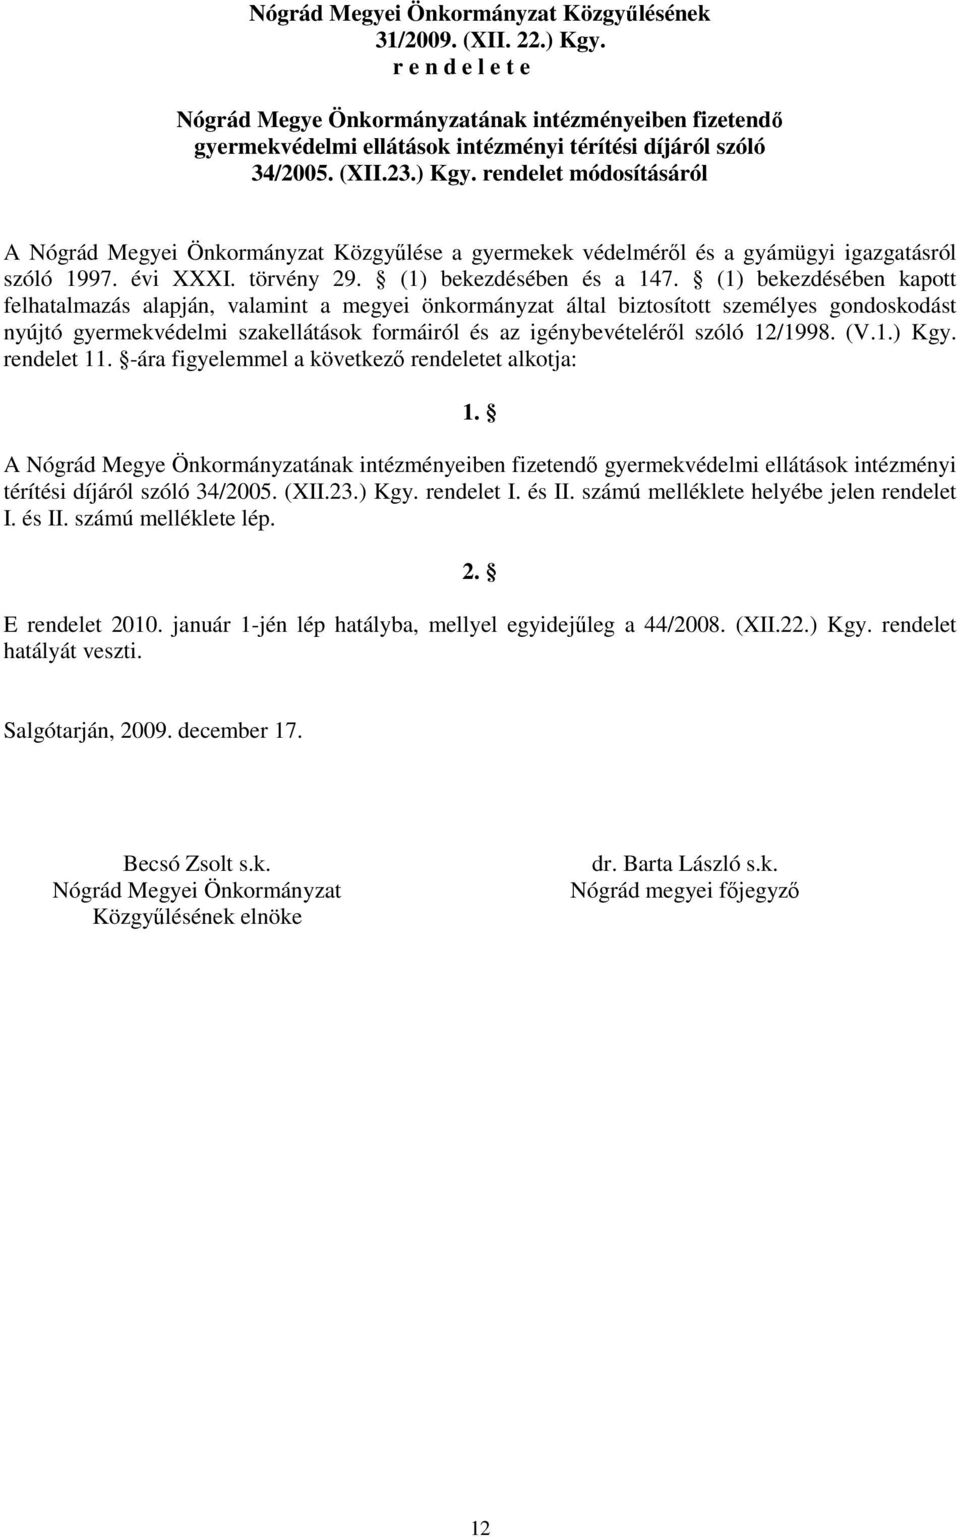 rendelet módosításáról A Nógrád Megyei Önkormányzat Közgyőlése a gyermekek védelmérıl és a gyámügyi igazgatásról szóló 1997. évi XXXI. törvény 29. (1) bekezdésében és a 147.